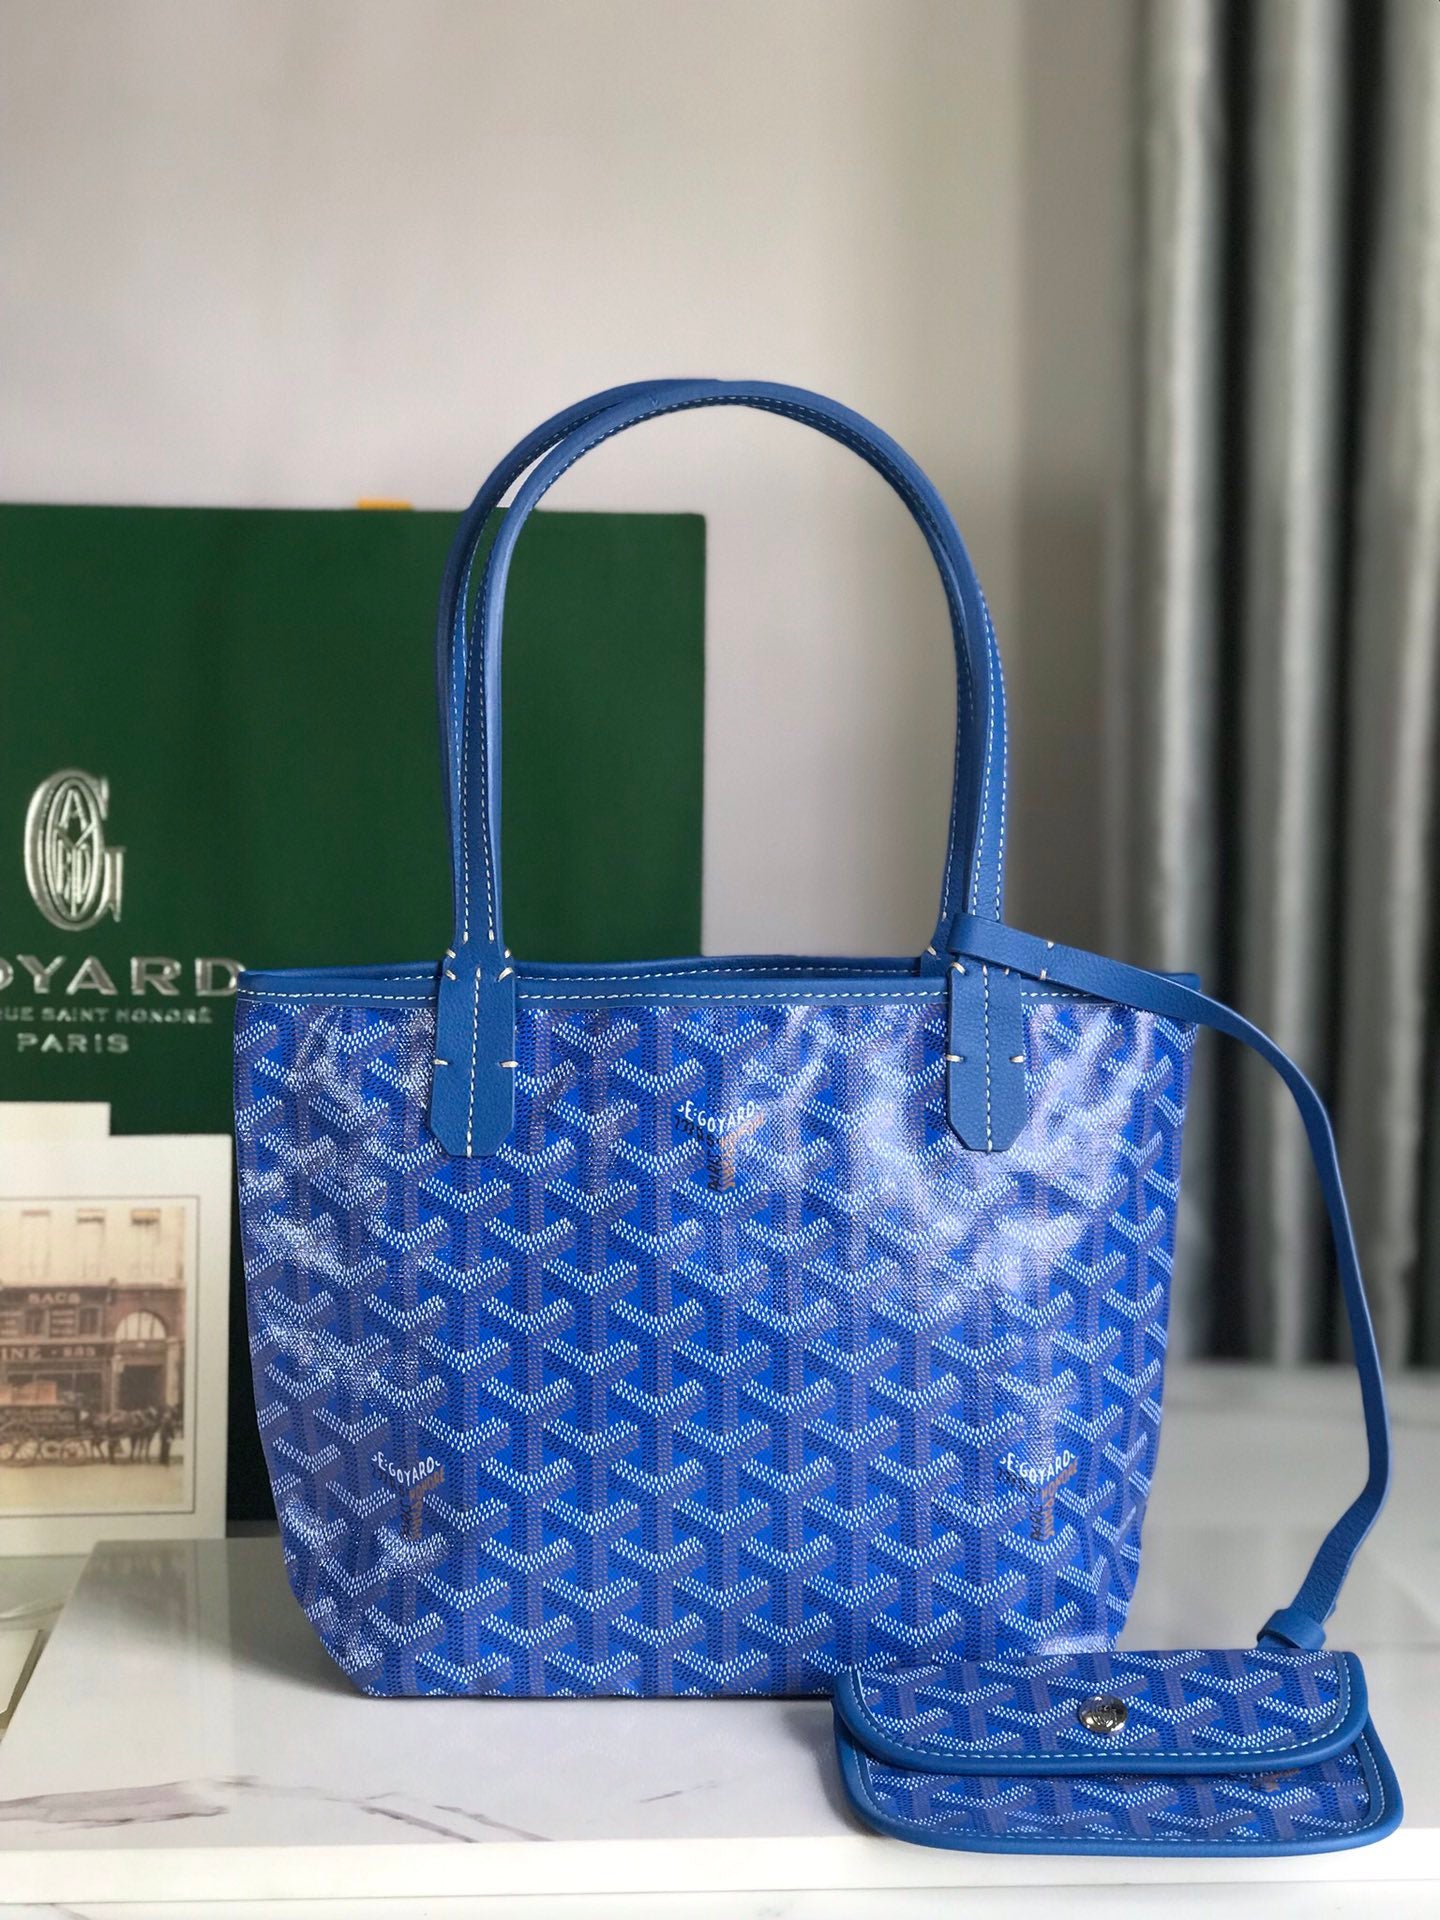 Goyard Tote Bag in Baby Blue 